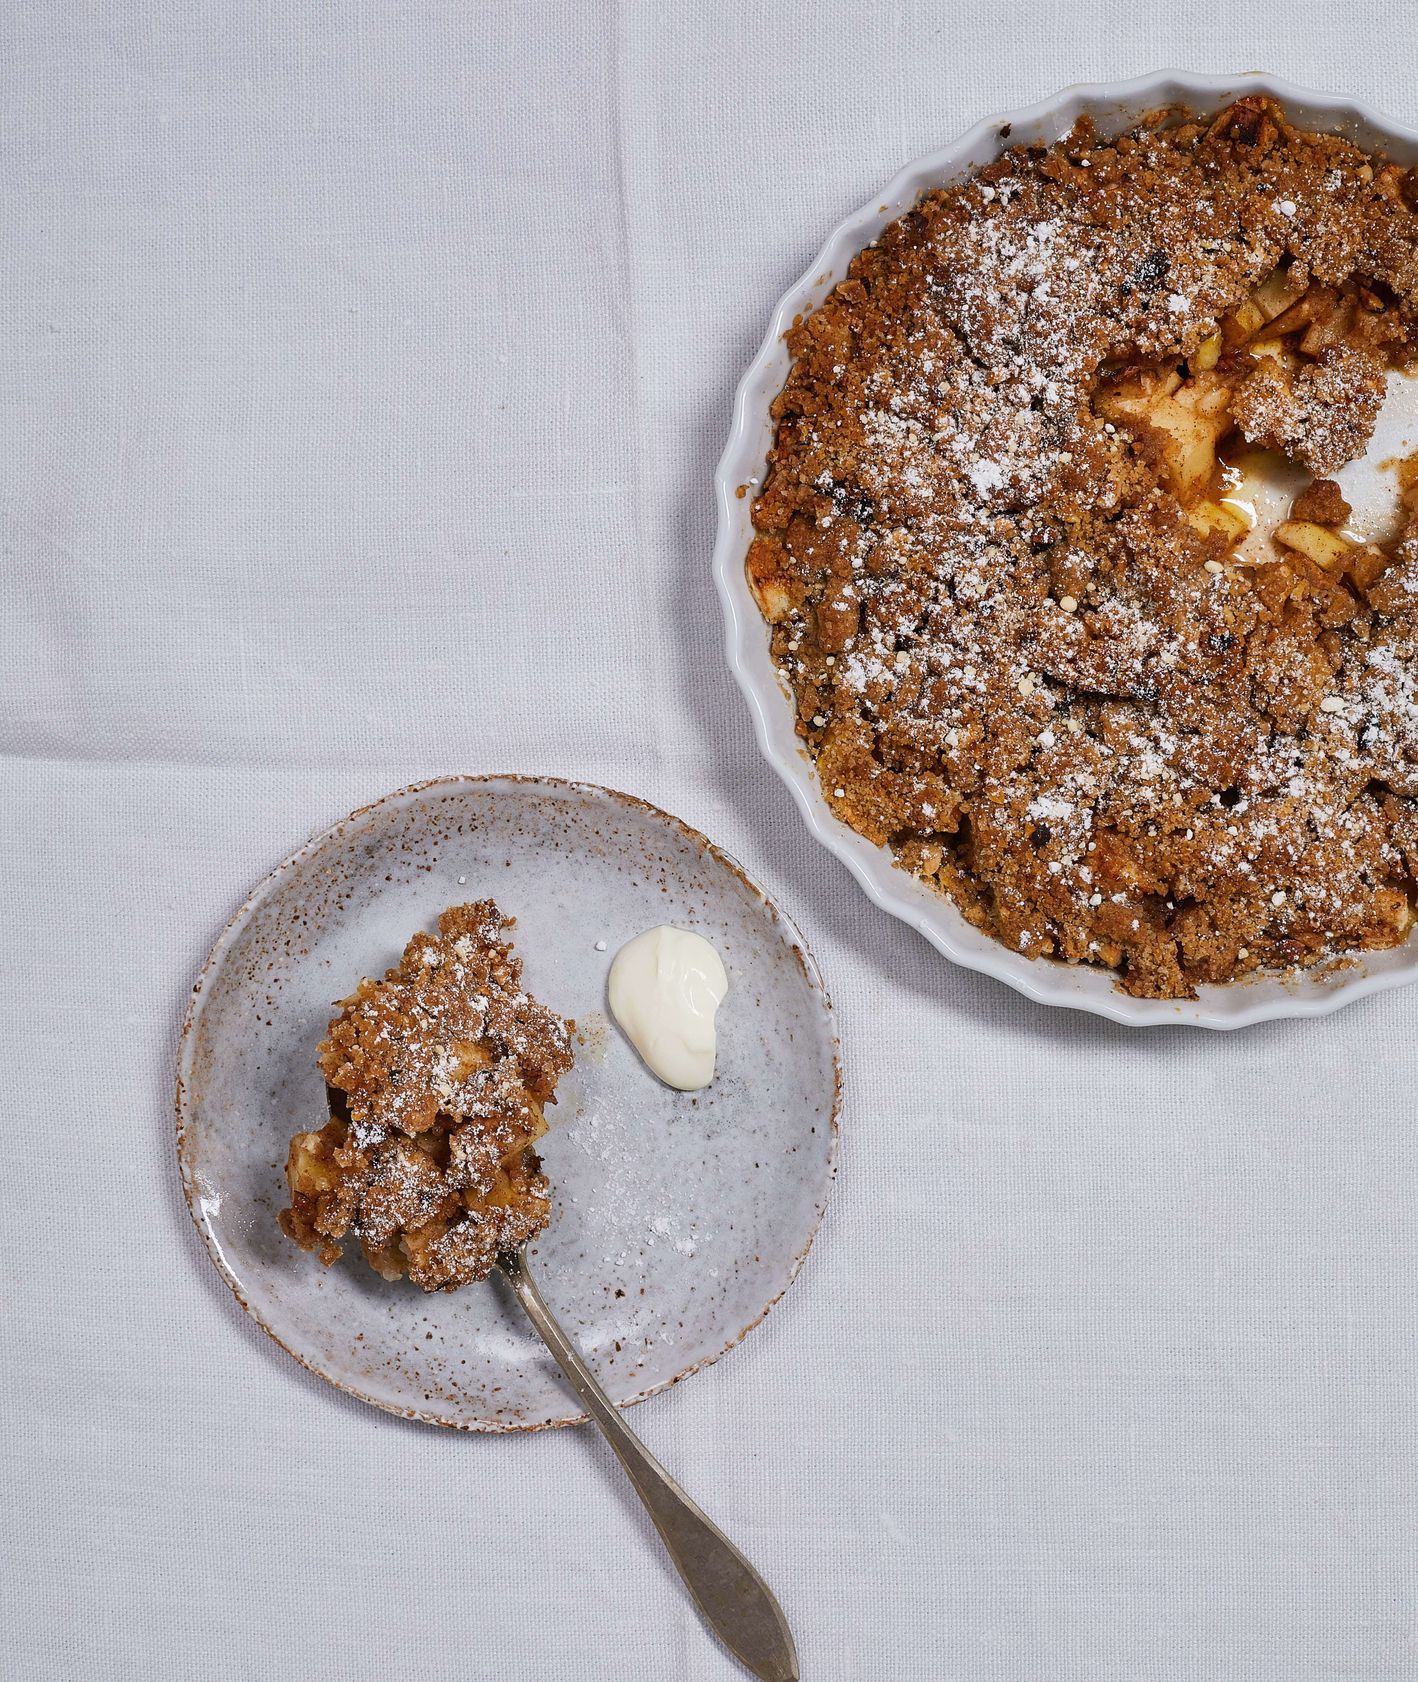 Deser z jabłek pod maślaną kruszonką obsypane cukrem pudrem (fot. Maciek Niemojewski)